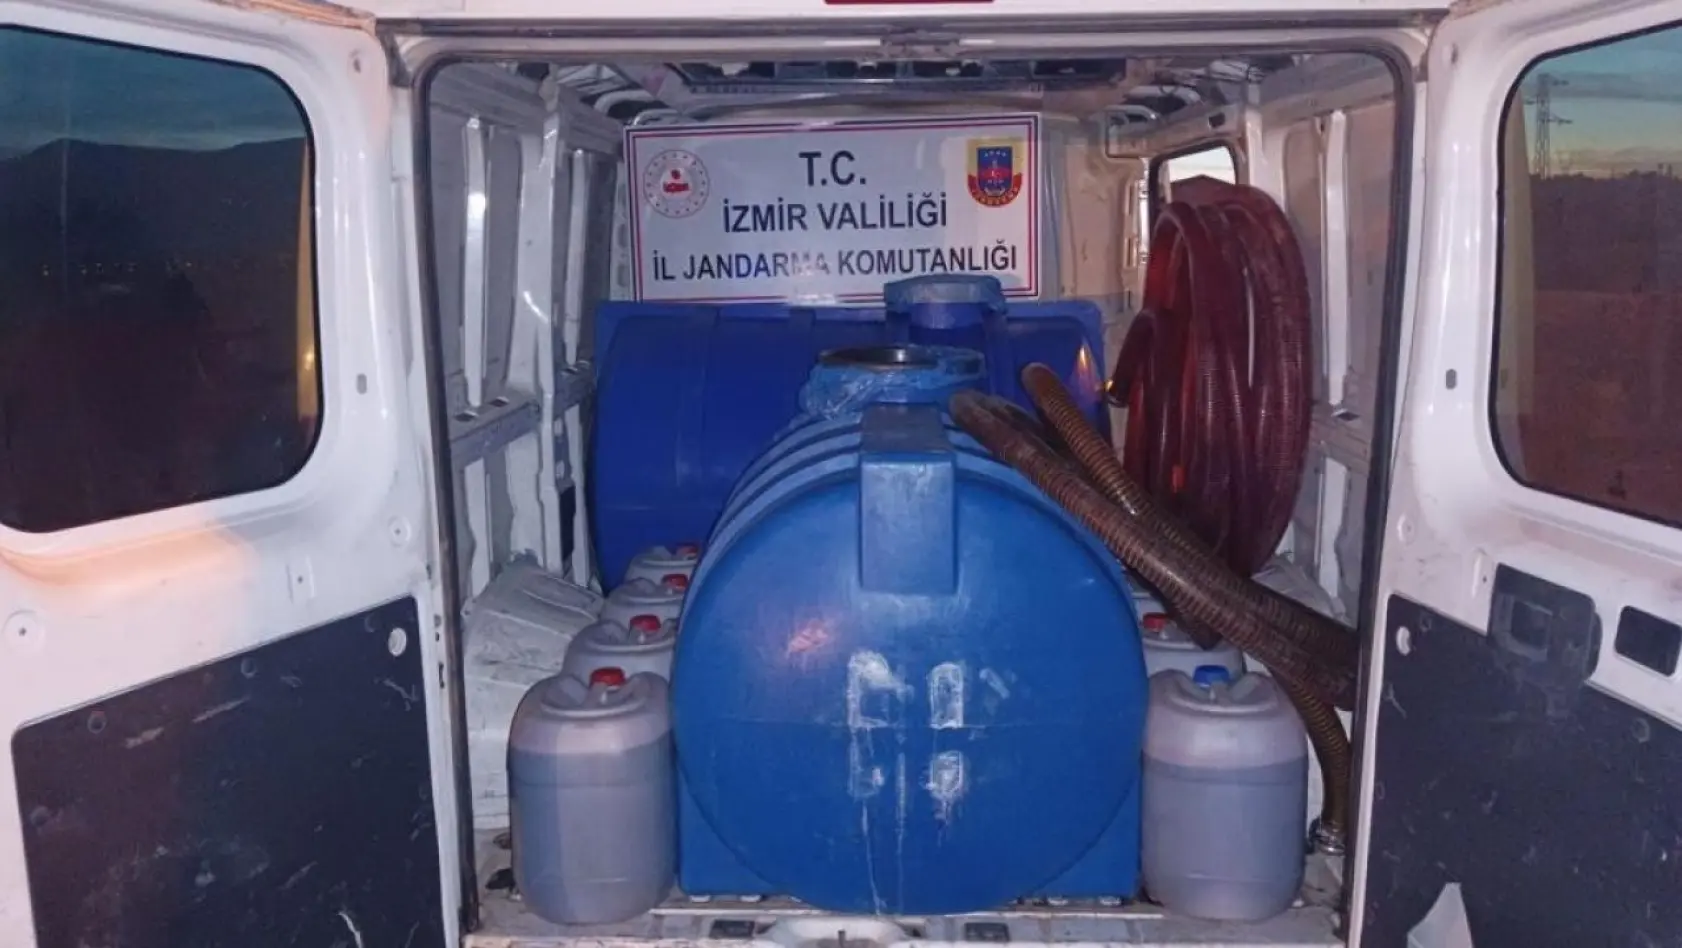 İzmir'de 2 bin 300 litre bandrolsüz içki ele geçirildi